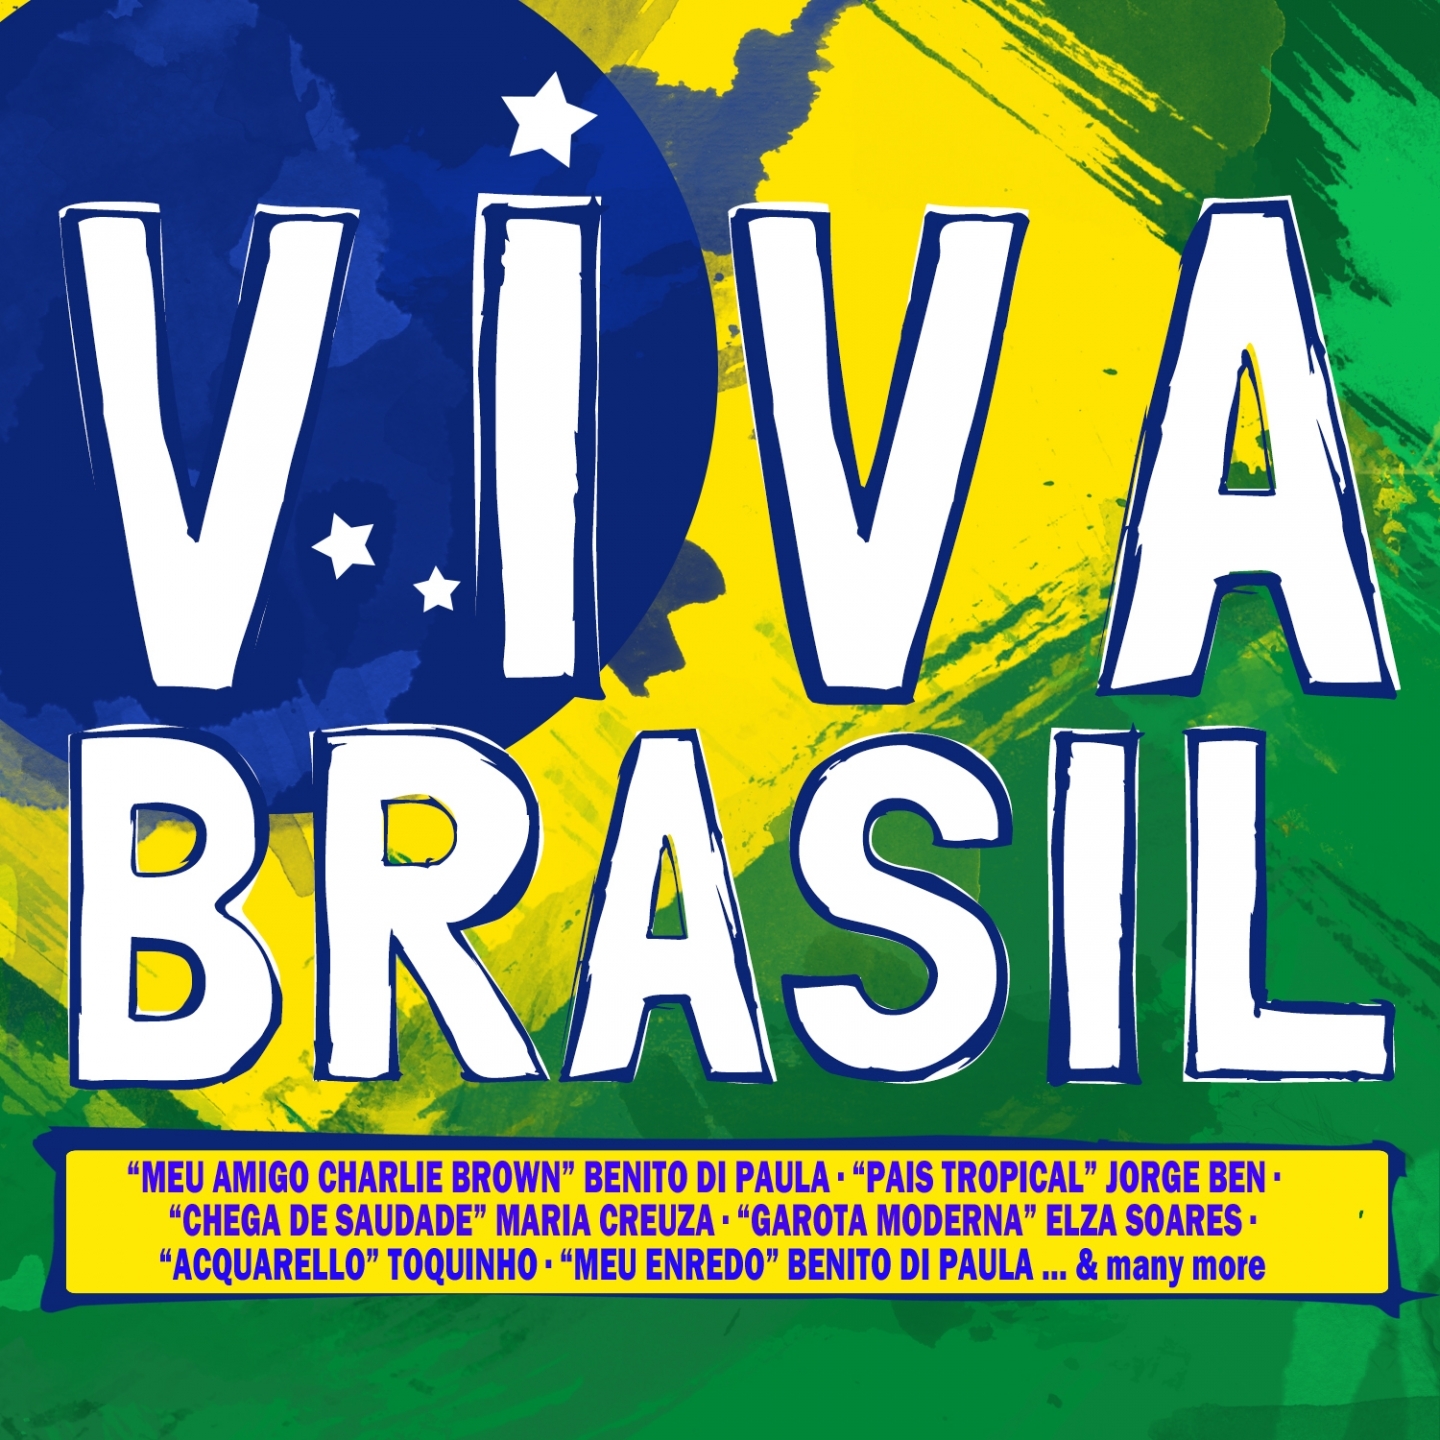 Viva Brasil!